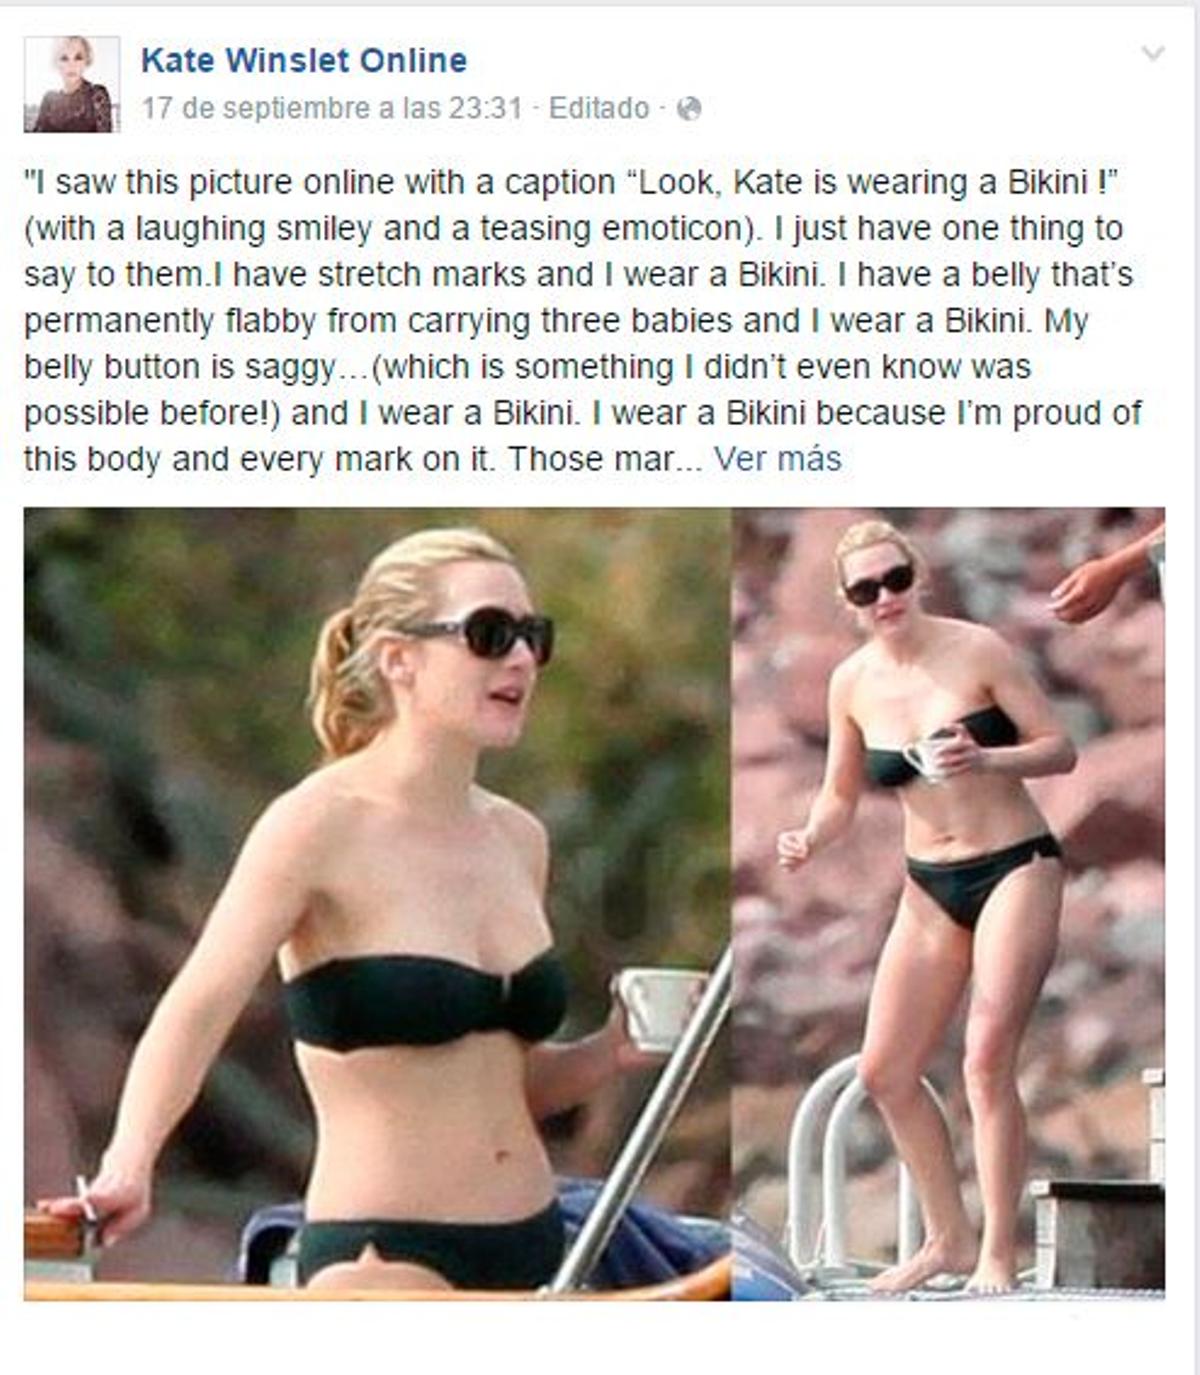 La polémica por el bikini de Kate Winslet - Woman